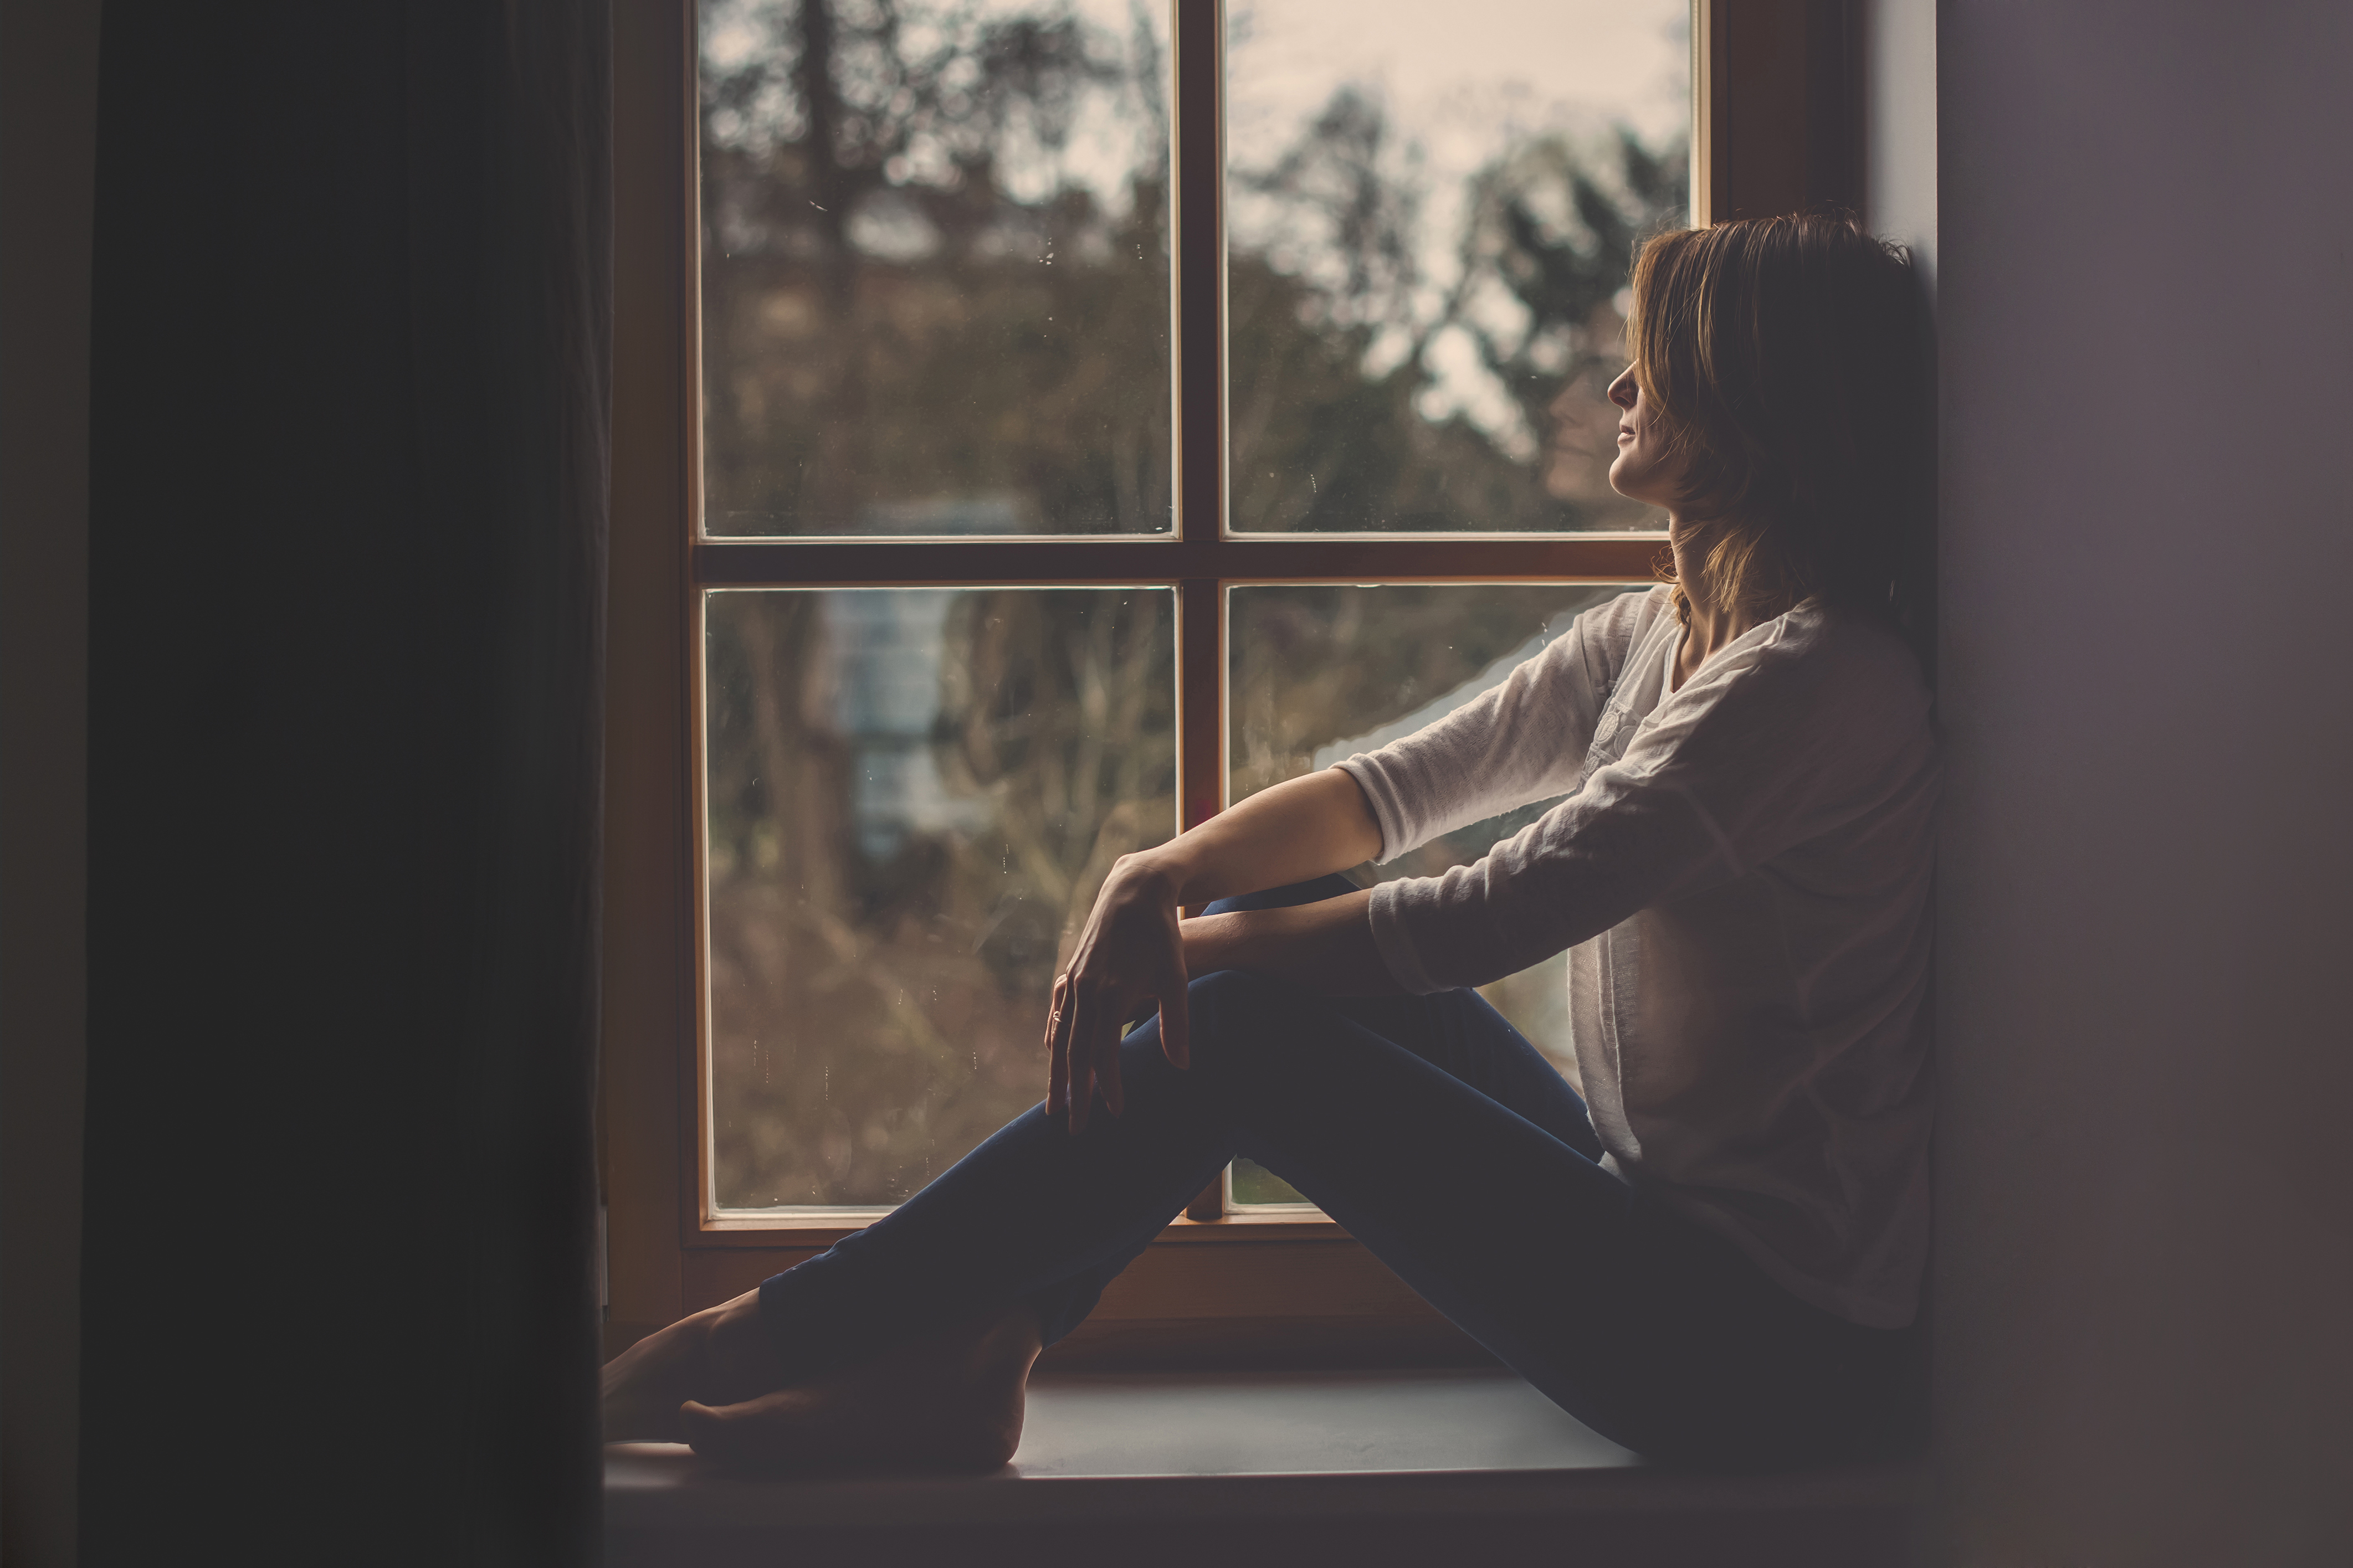 Una mujer sentada junto al alféizar de una ventana mirando al exterior | Foto: Shutterstock